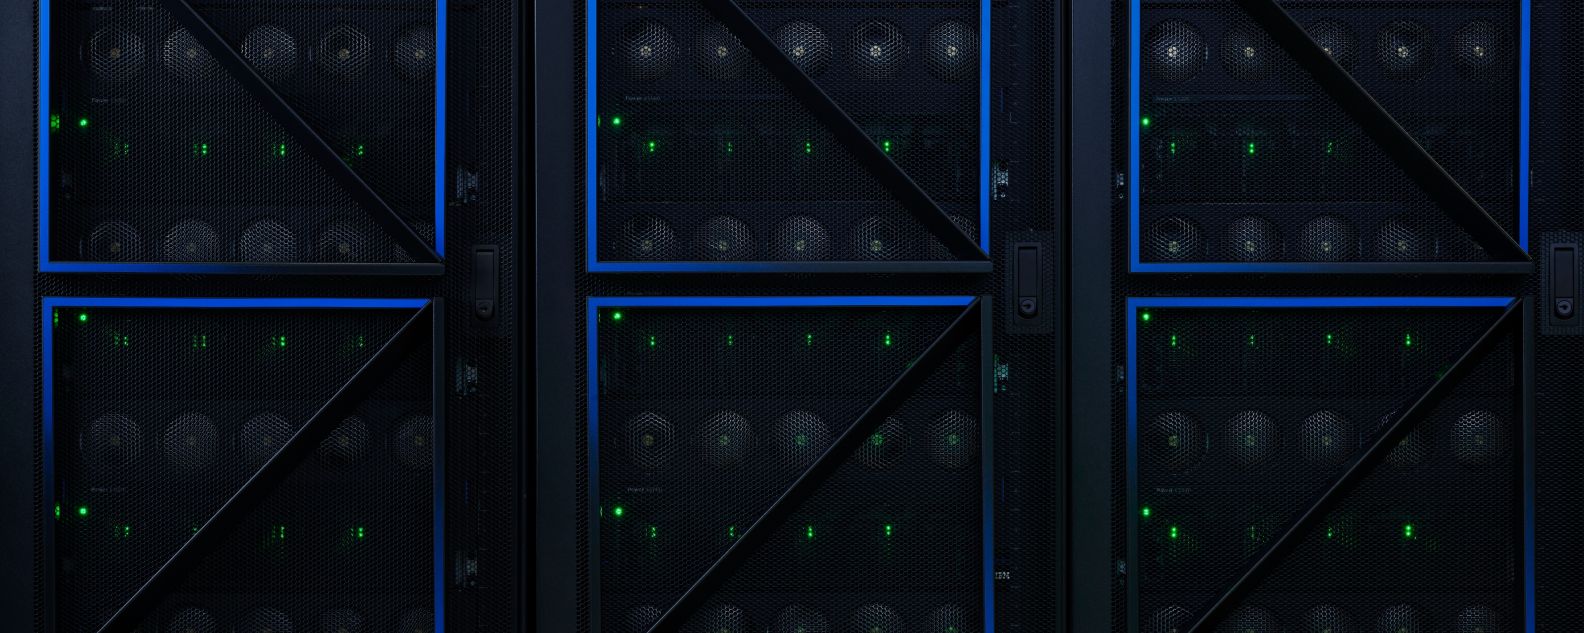 IBM Power System E1080, server rack